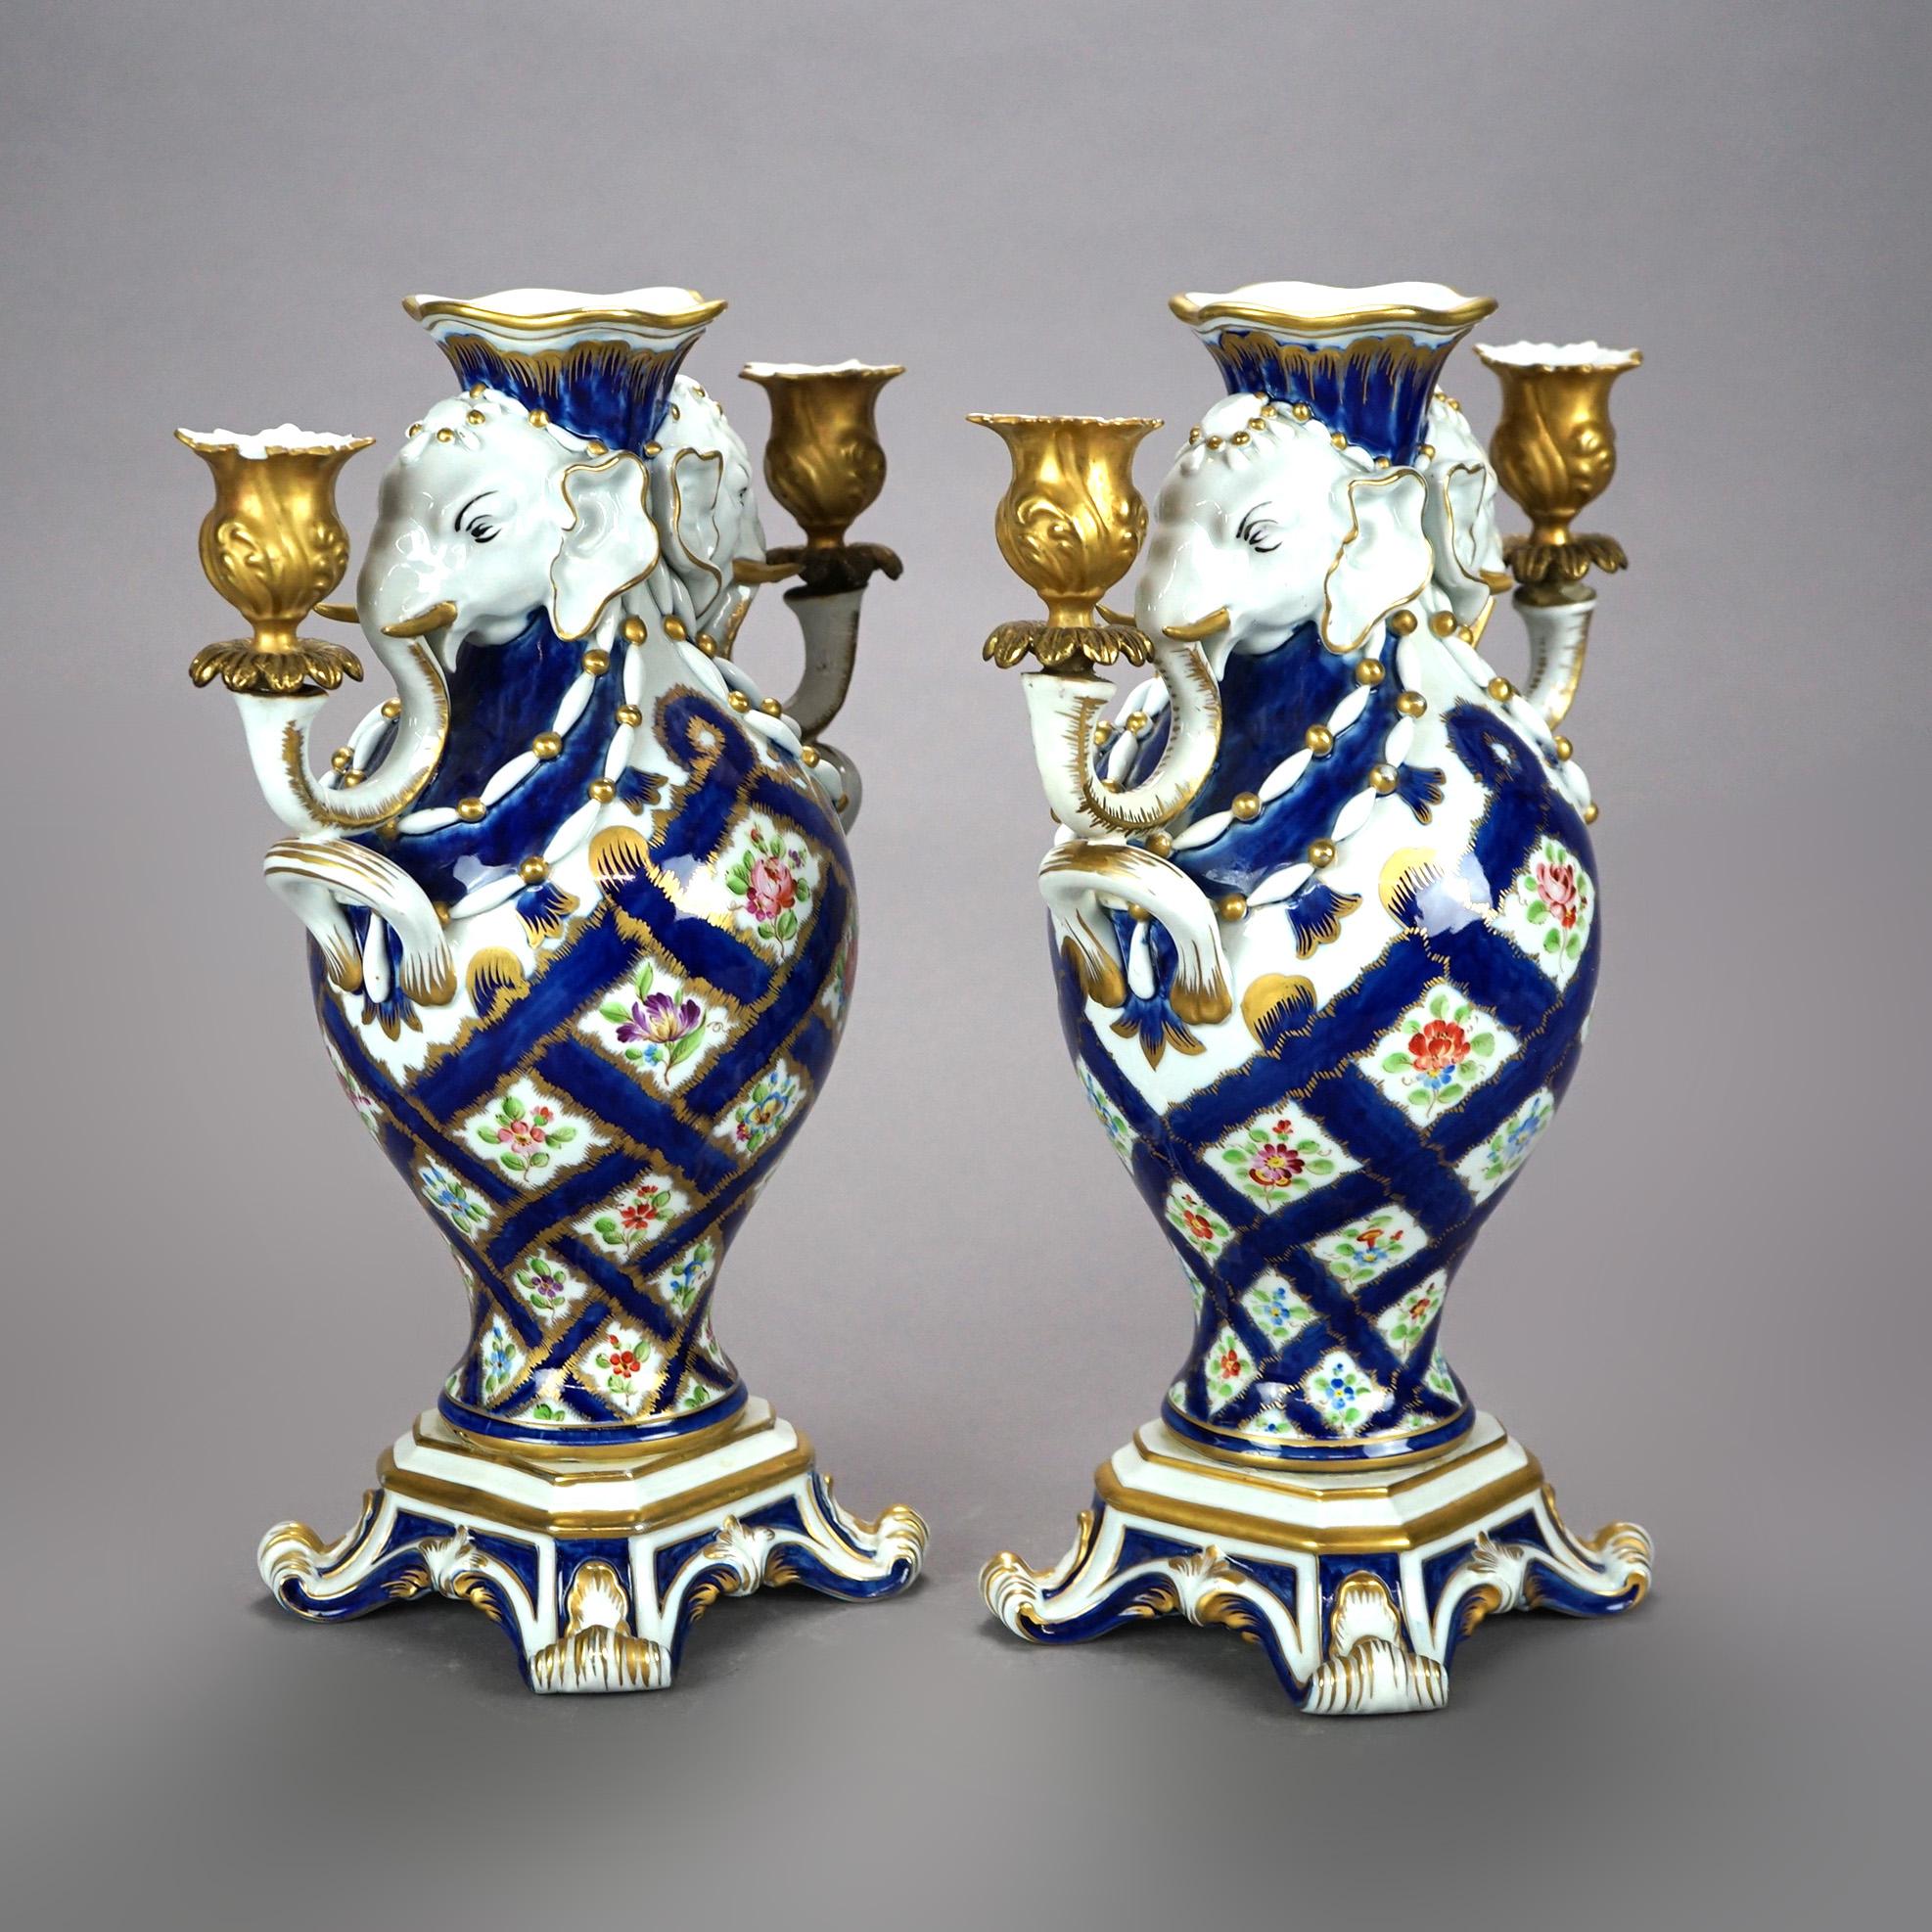 Ein antikes Paar figuraler italienischer Kandelaber bietet eine Porzellankonstruktion mit kobaltblauem Gittermuster mit Blumen, flankiert von Elefantenkerzenhaltern, erhöht auf einem Sockel, durchgehend vergoldet, Herstellermarke auf dem Sockel